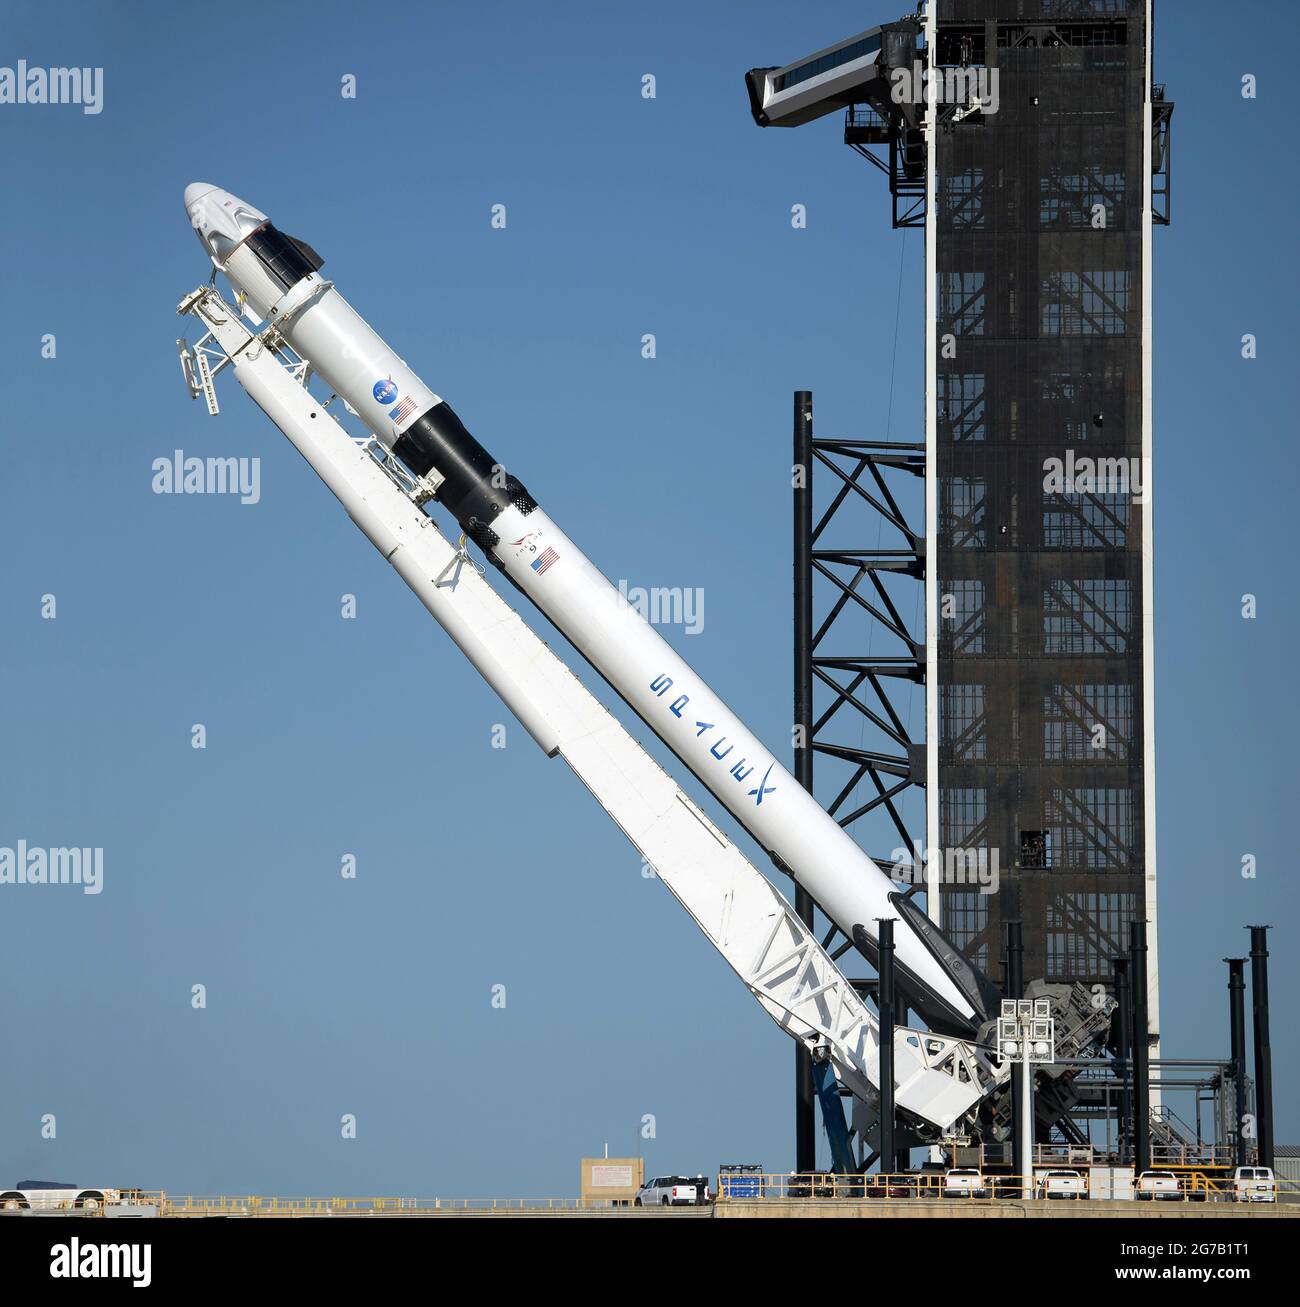 Eine SpaceX Falcon 9-Rakete mit der Crew Dragon-Raumsonde des Unternehmens wird gesehen, als sie für die bevorstehende Demo-2-Mission am 21. Mai 2020 in eine vertikale Position auf der Startfläche gehoben wird. Kennedy Space Center, Florida, USA. Die NASA-Mission SpaceX Demo-2 ist der erste Start mit Astronauten der Raumsonde SpaceX Crew Dragon und der Falcon 9-Rakete zur Internationalen Raumstation. Eine einzigartige, optimierte und digital verbesserte Version eines NASA-Bildes vom Senior NASA-Fotografen Bill Ingalis / Credit NASA Stockfoto